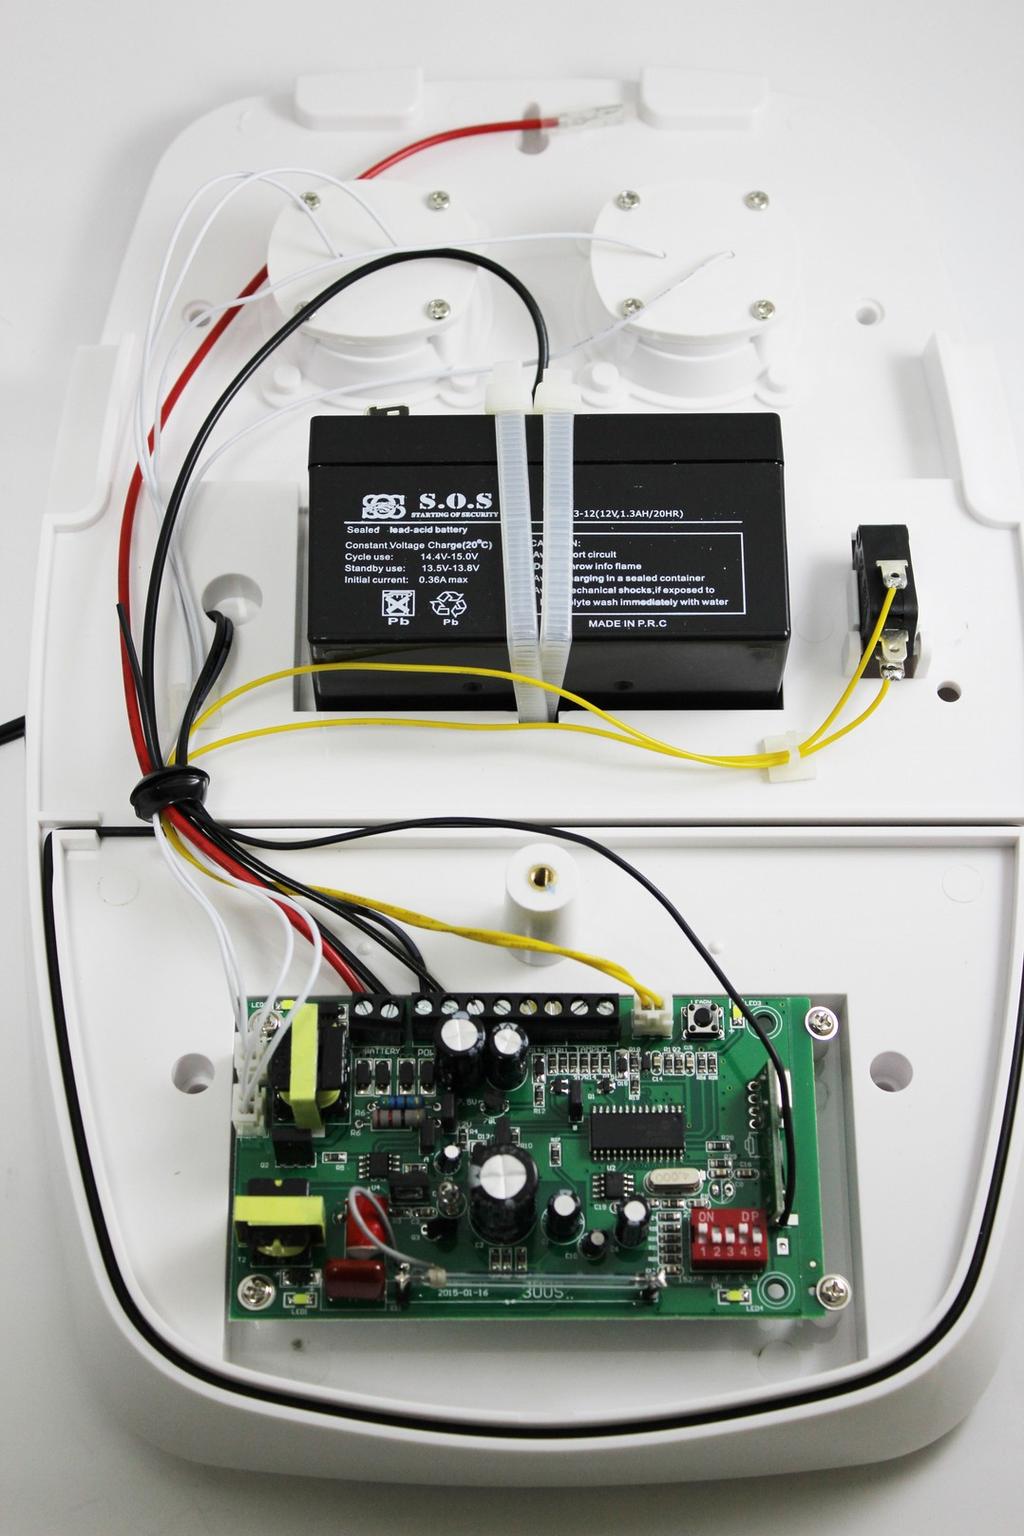 CARATTERISTICHE TECNICHE Batteria ricaricabile inclusa Trasmettitore incluso (per collegamento ad allarmi esistenti) 2 sirene interne Funzionamento 12v DC Assorbimento corrente 1200mA Led